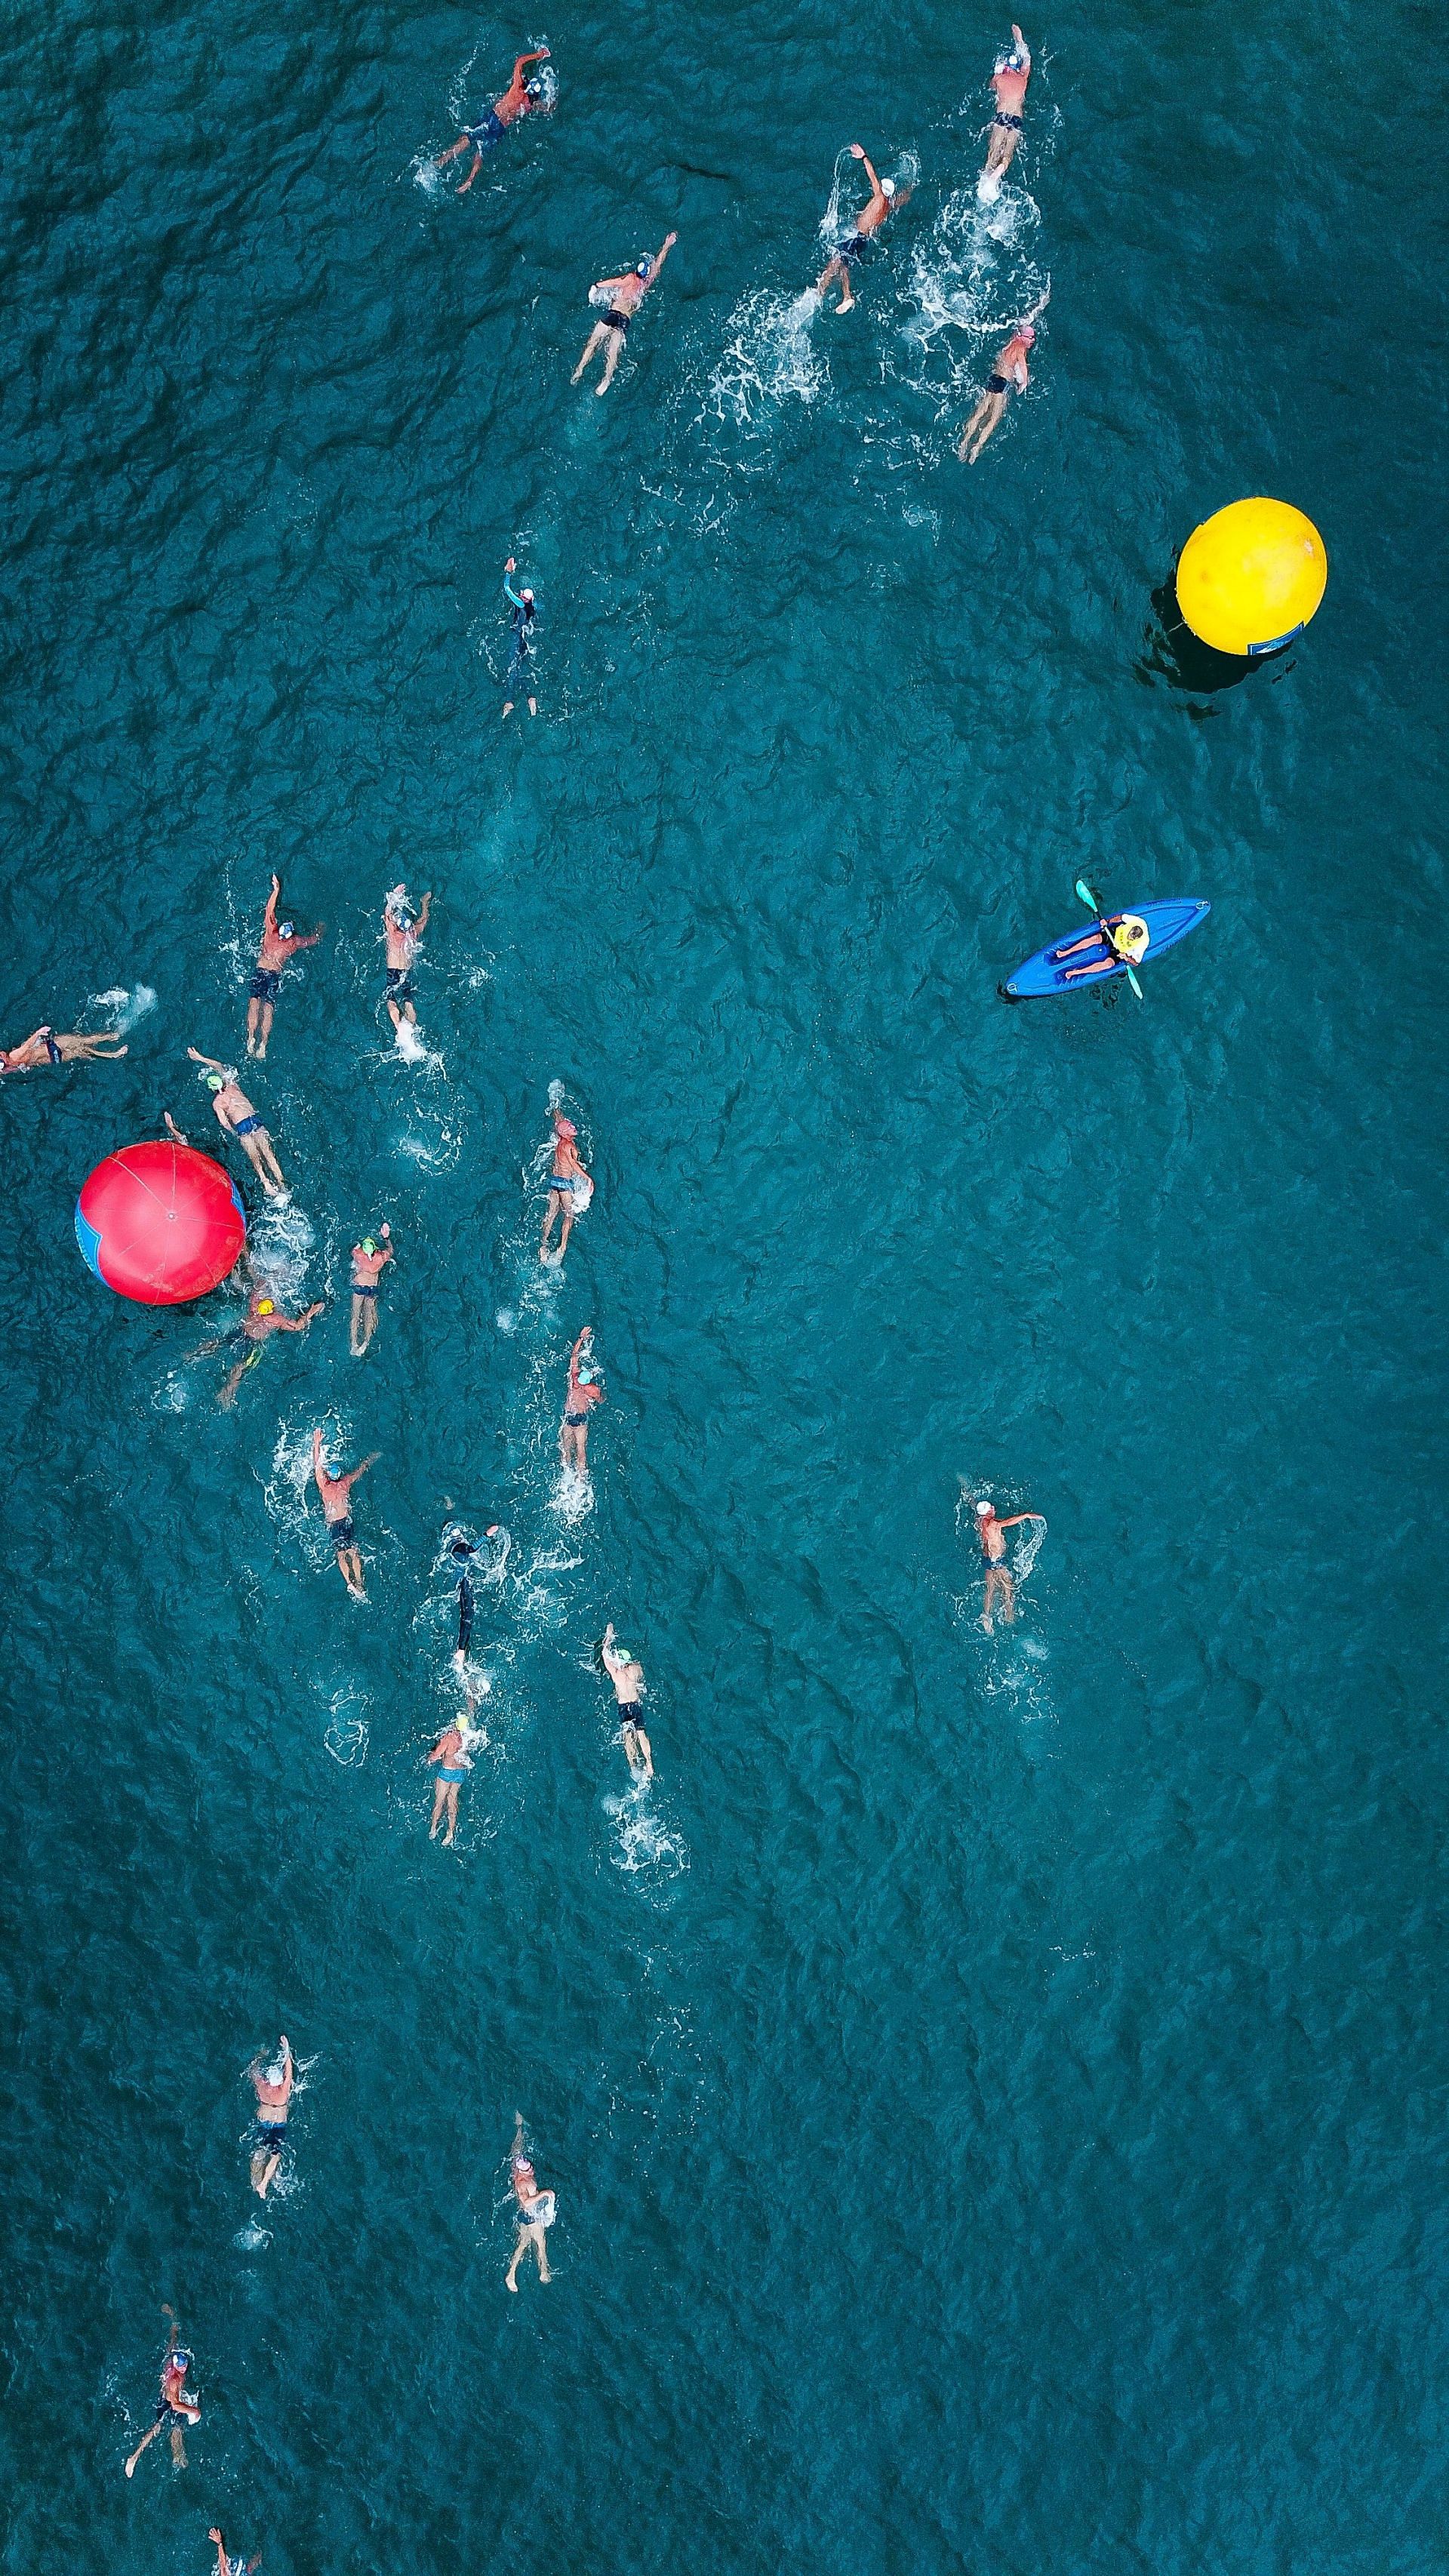 Swimming (Image via Pexels)